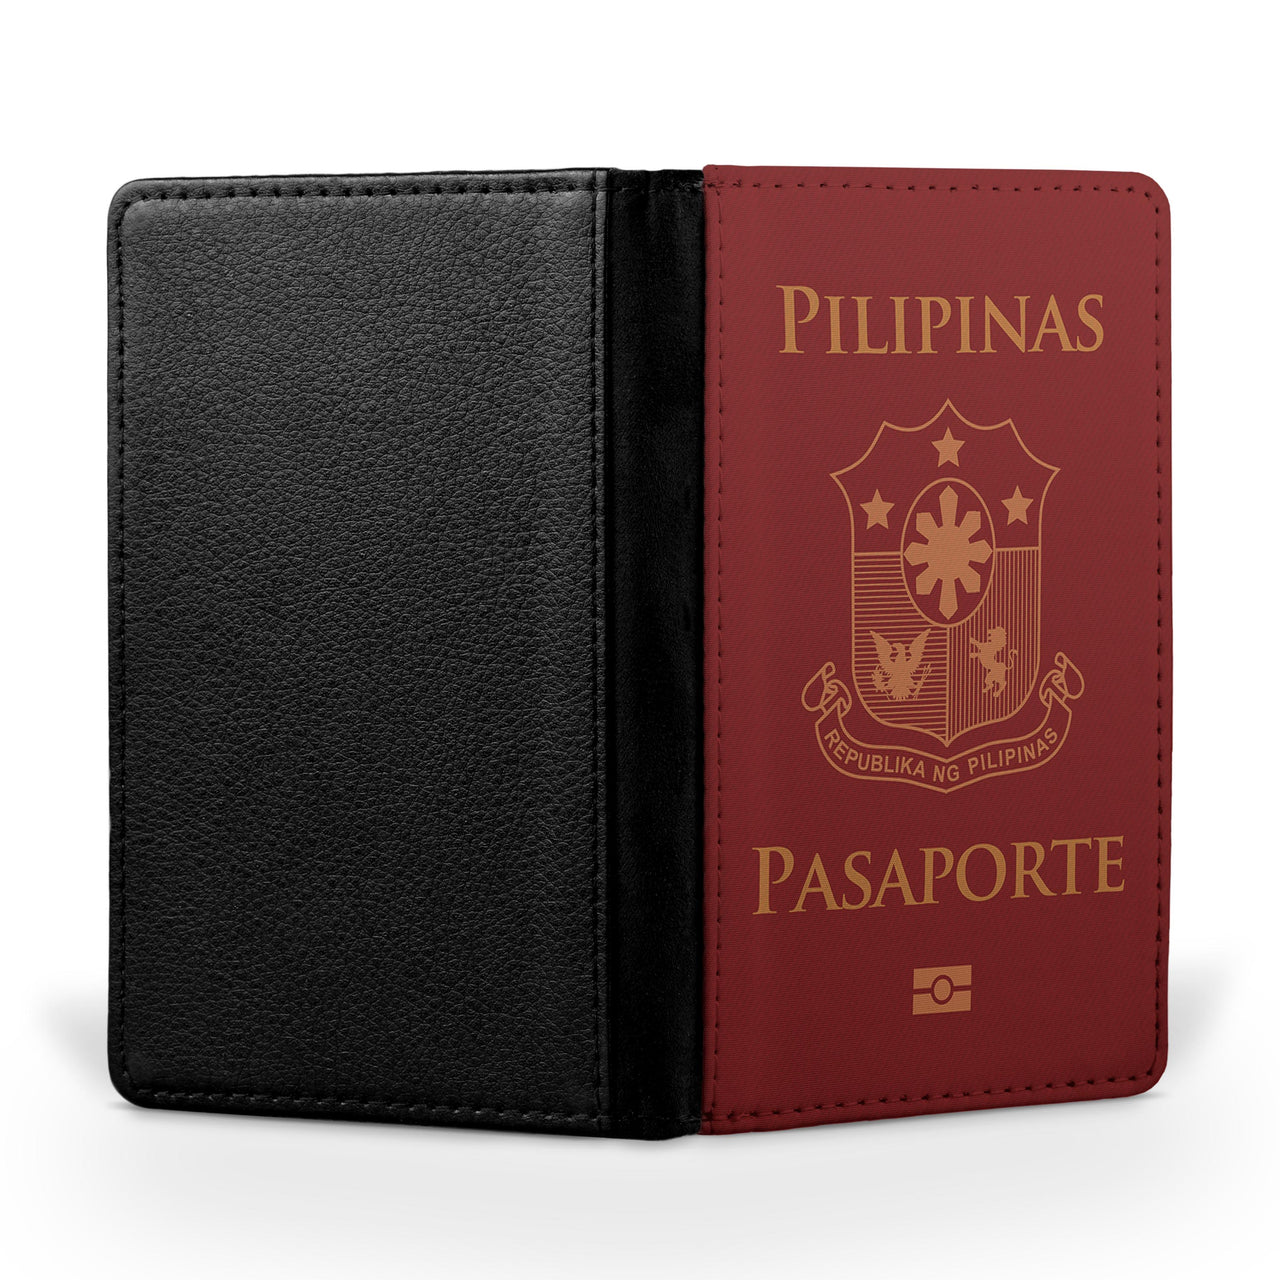 Philippines Passport Designed Passport & Travel Cases